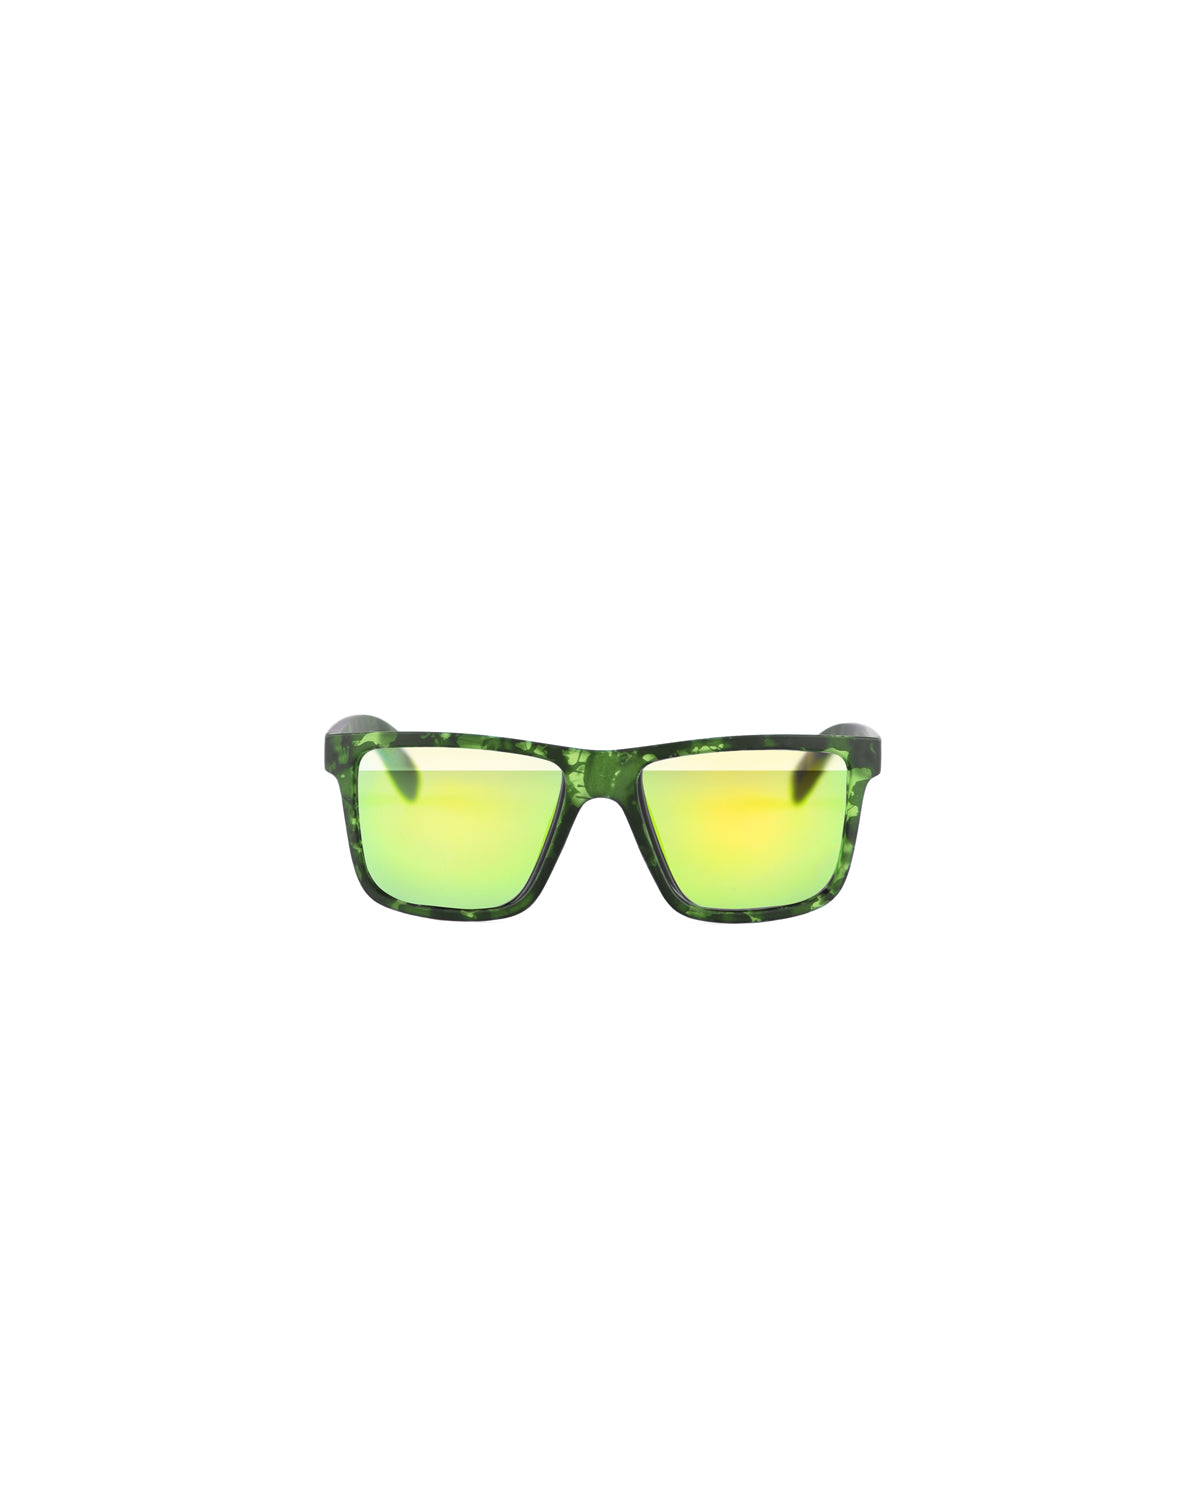 Occhiali Da Sole Color Verde Effetto Marmorizzato Con Lente A Specchio Fluo